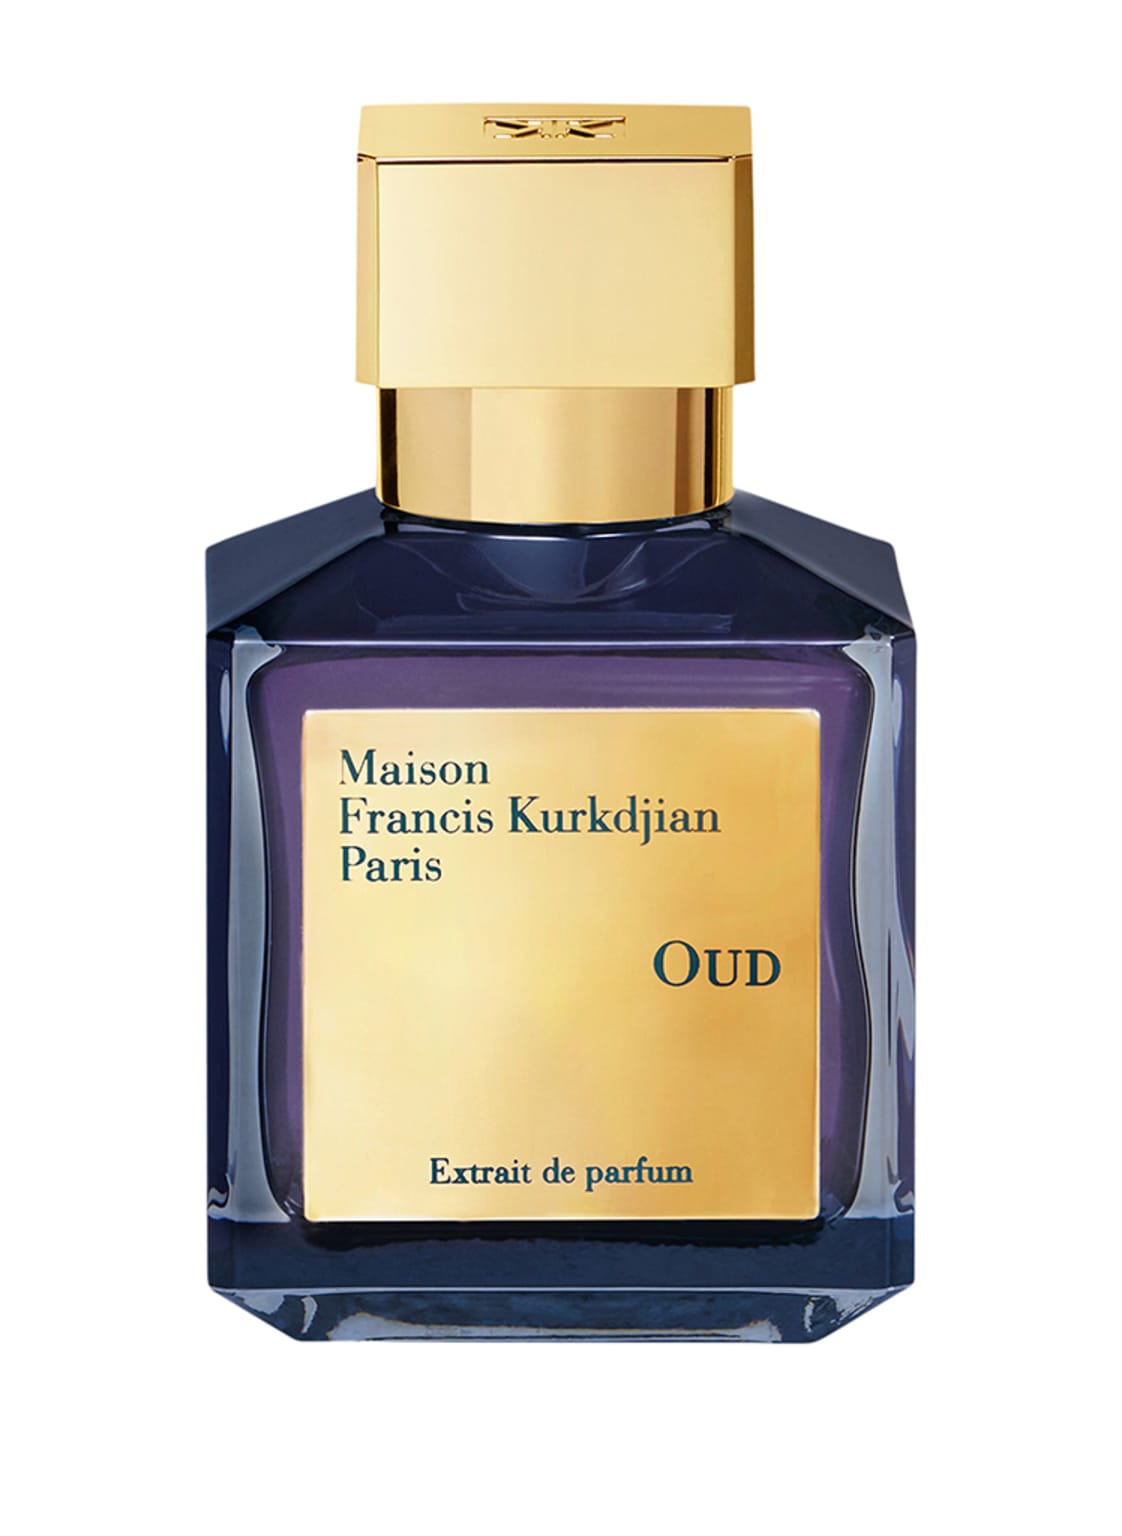 Maison Francis Kurkdjian Paris Oud Extrait de Parfum 70 ml von Maison Francis Kurkdjian Paris